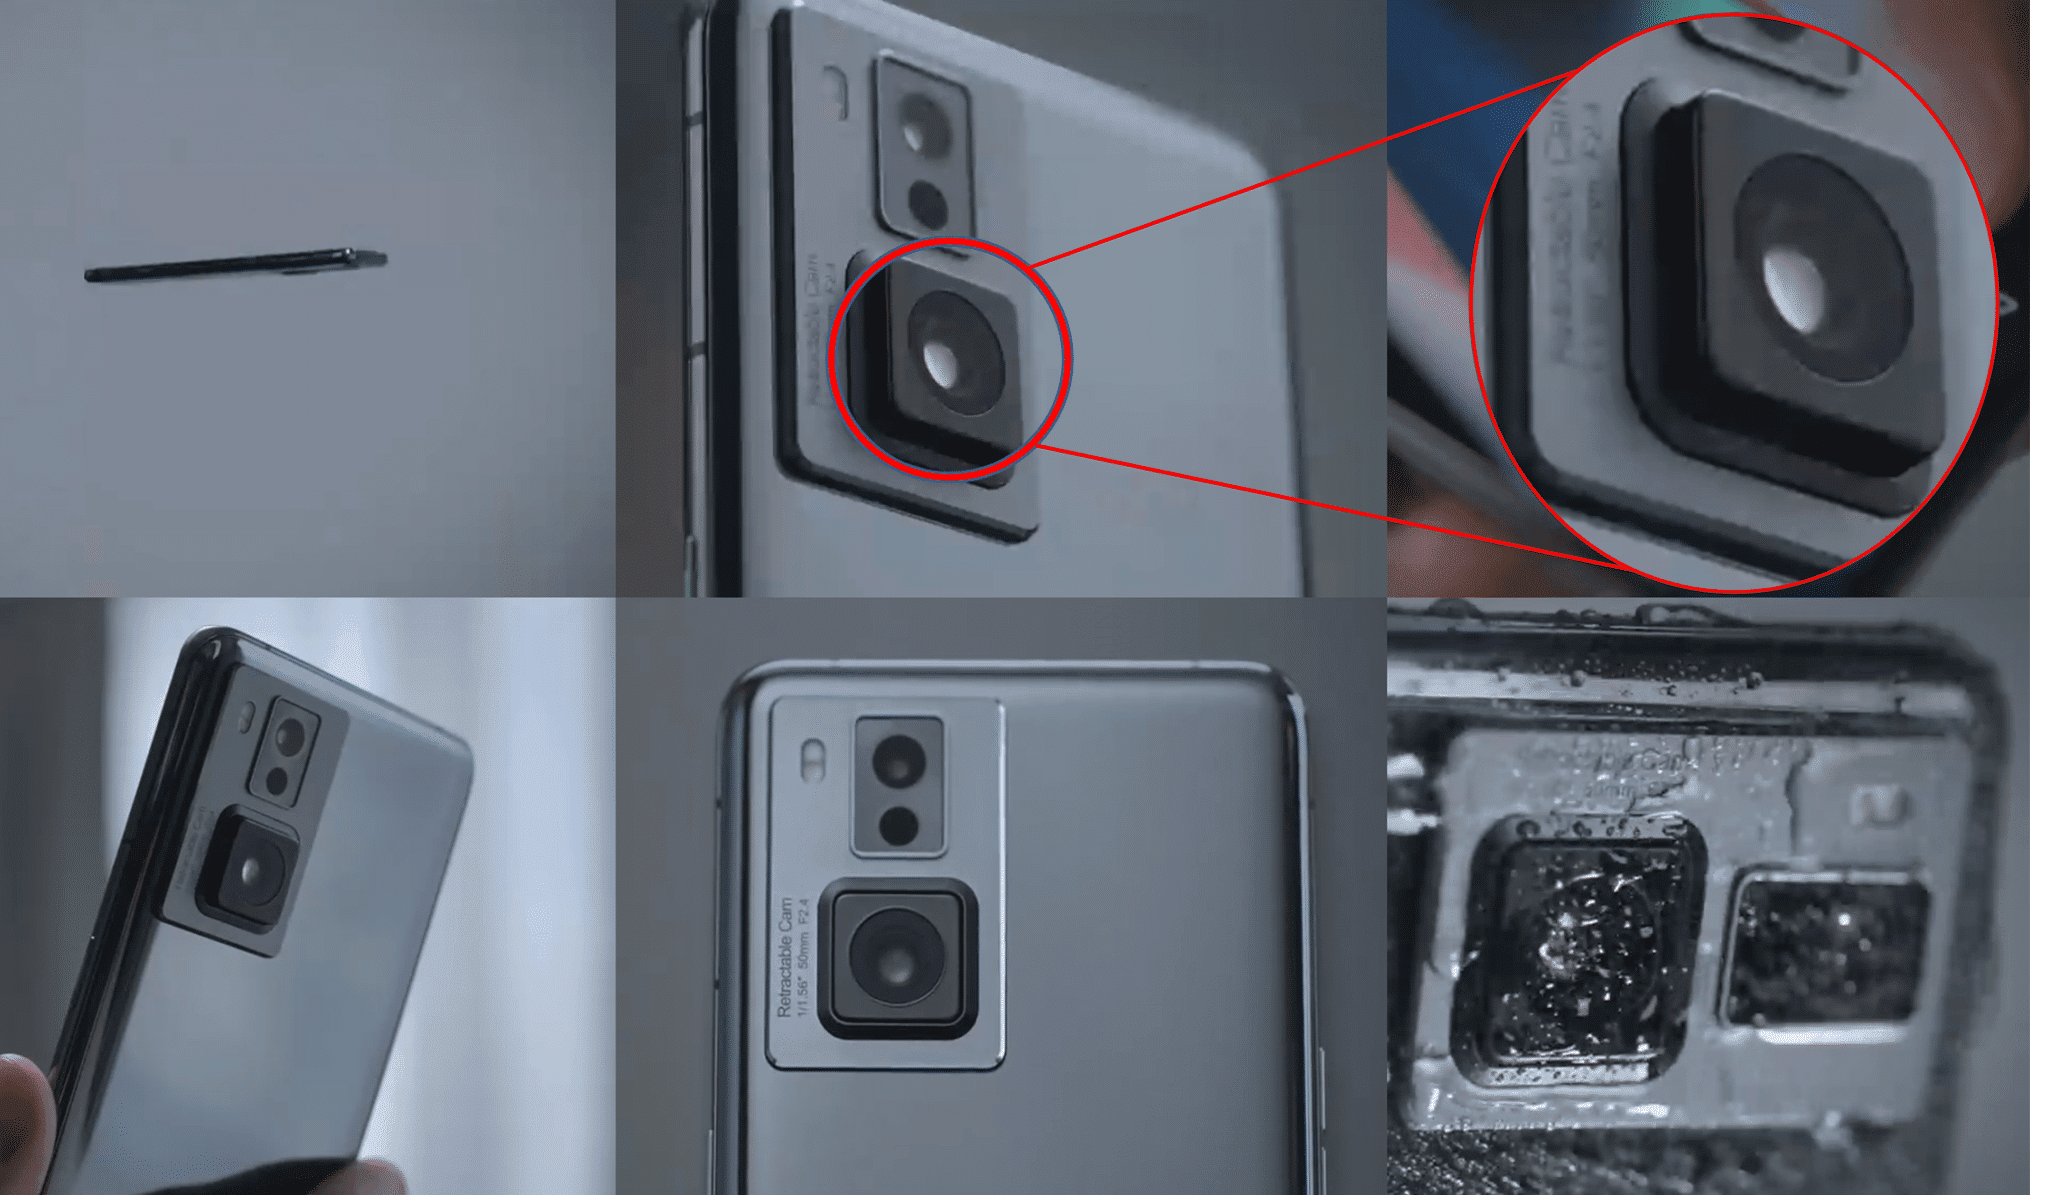 كاميرا بعدسة متحركة قابلة للسحب Retractable Cam التي تعد تكنولوجيا جديدة تنوي اوبو إطلاق